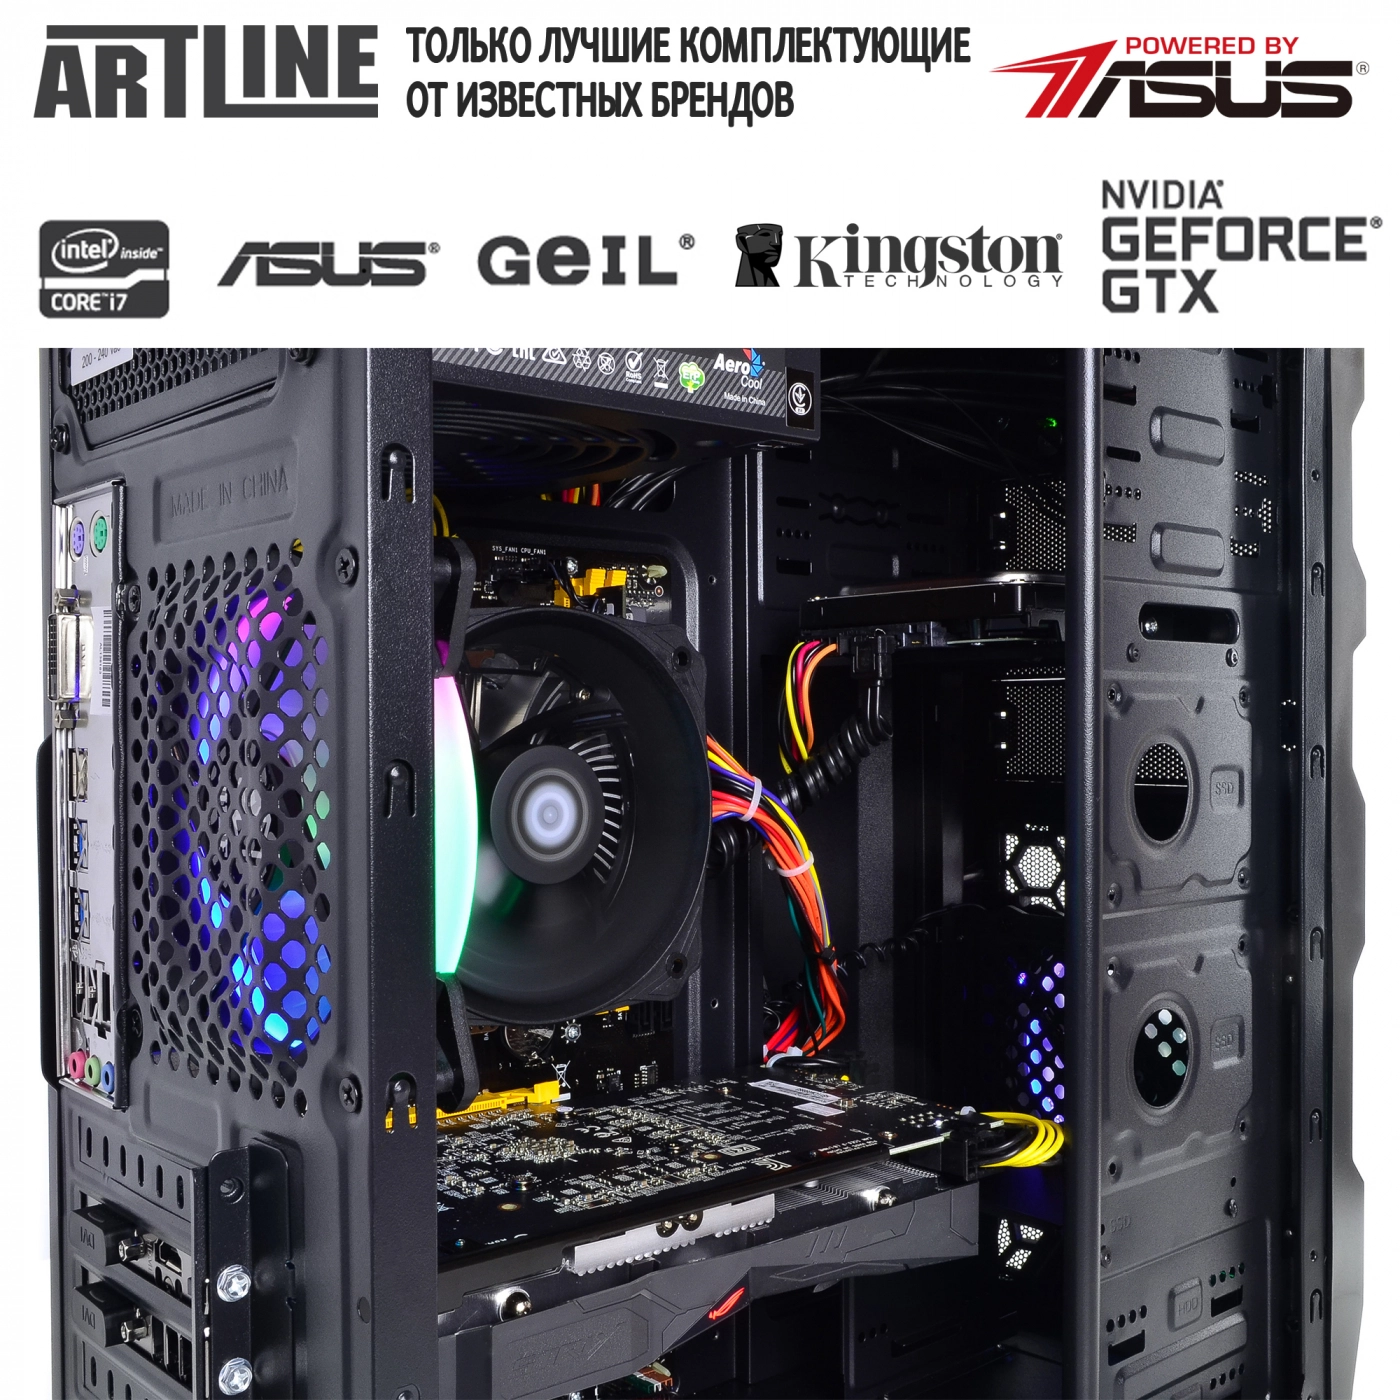 Купить Компьютер ARTLINE Gaming X45v14 - фото 6